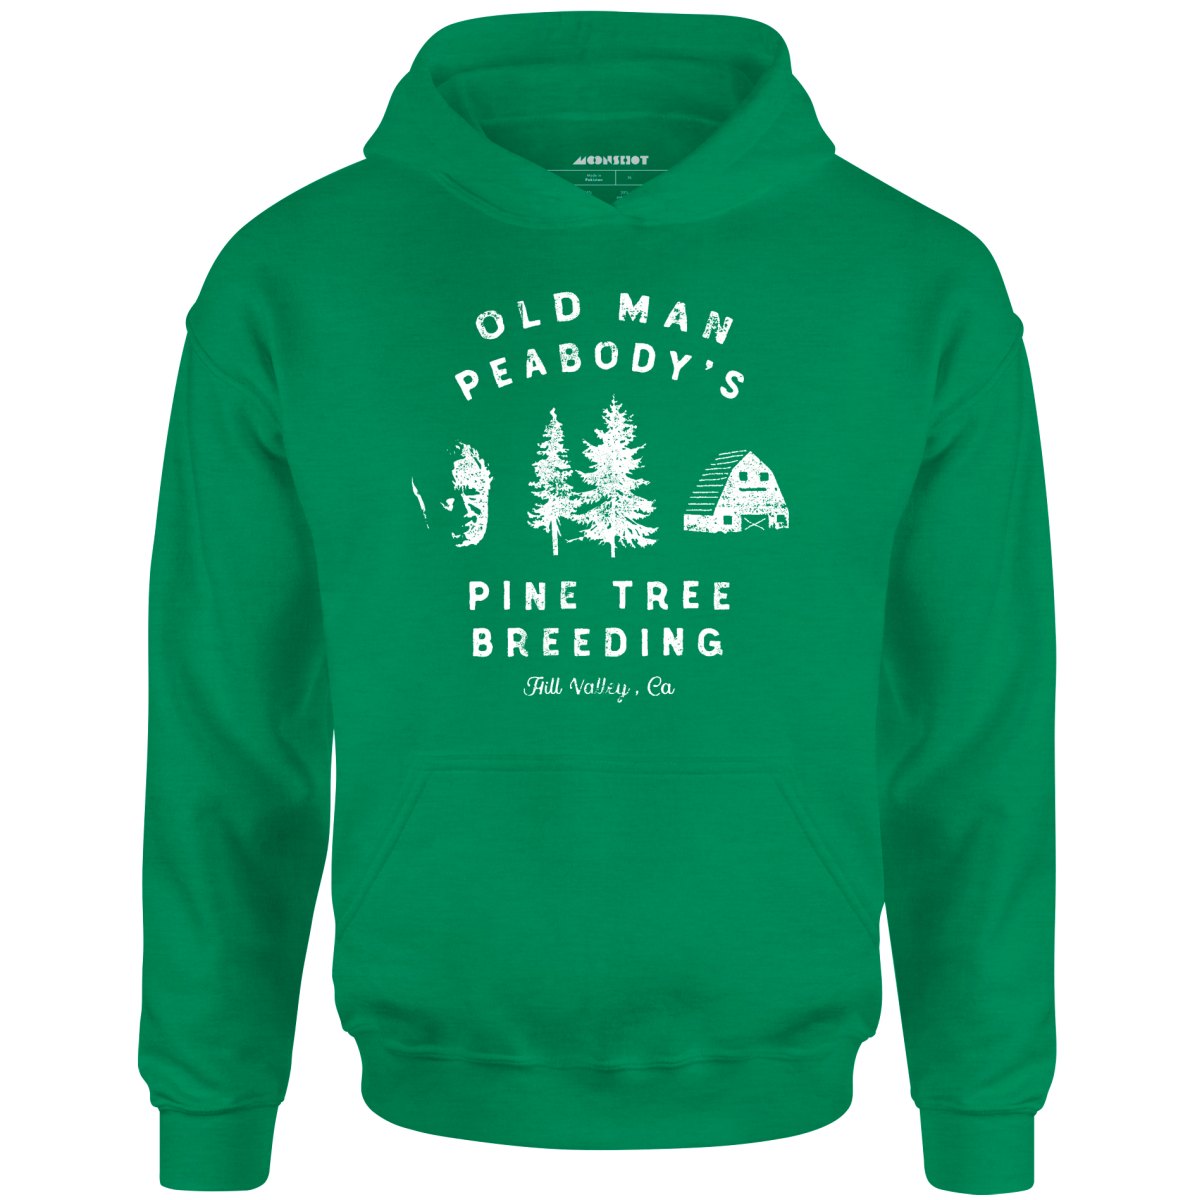 Old Man Peabody's Pine Tree Breeding - Unisex Hoodie